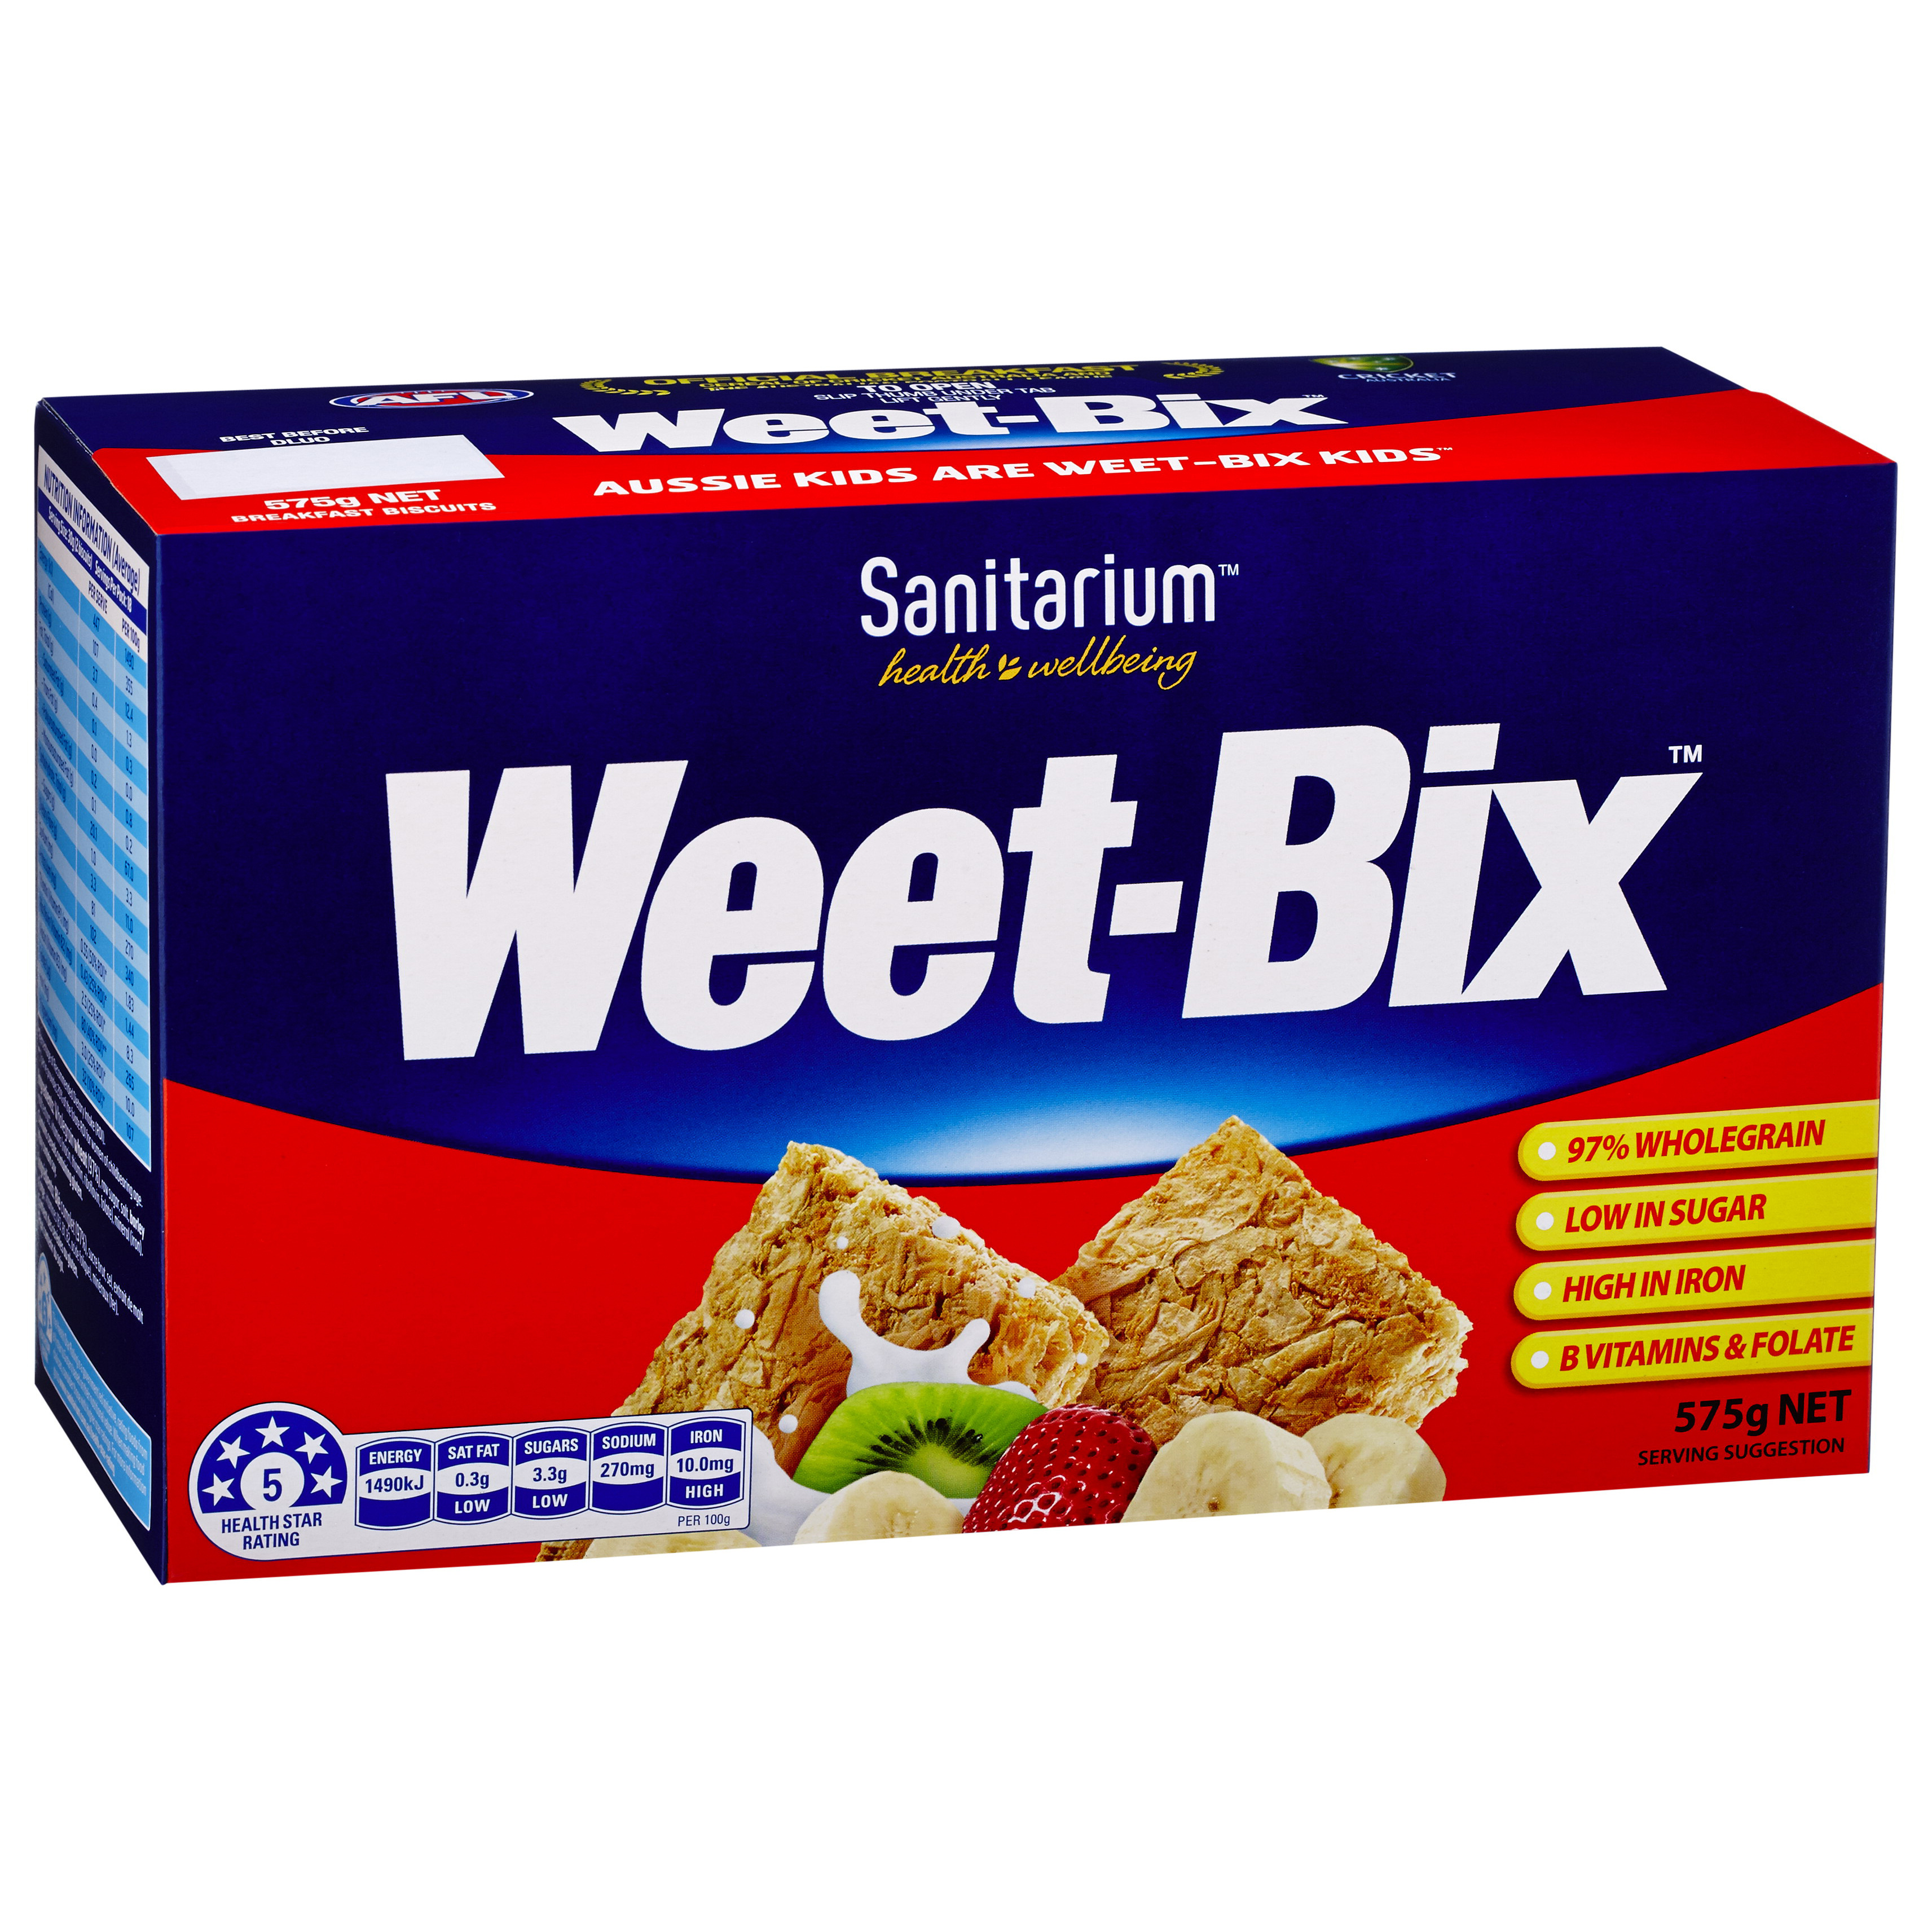 Sanitarium Weet-Bix 即食麦片